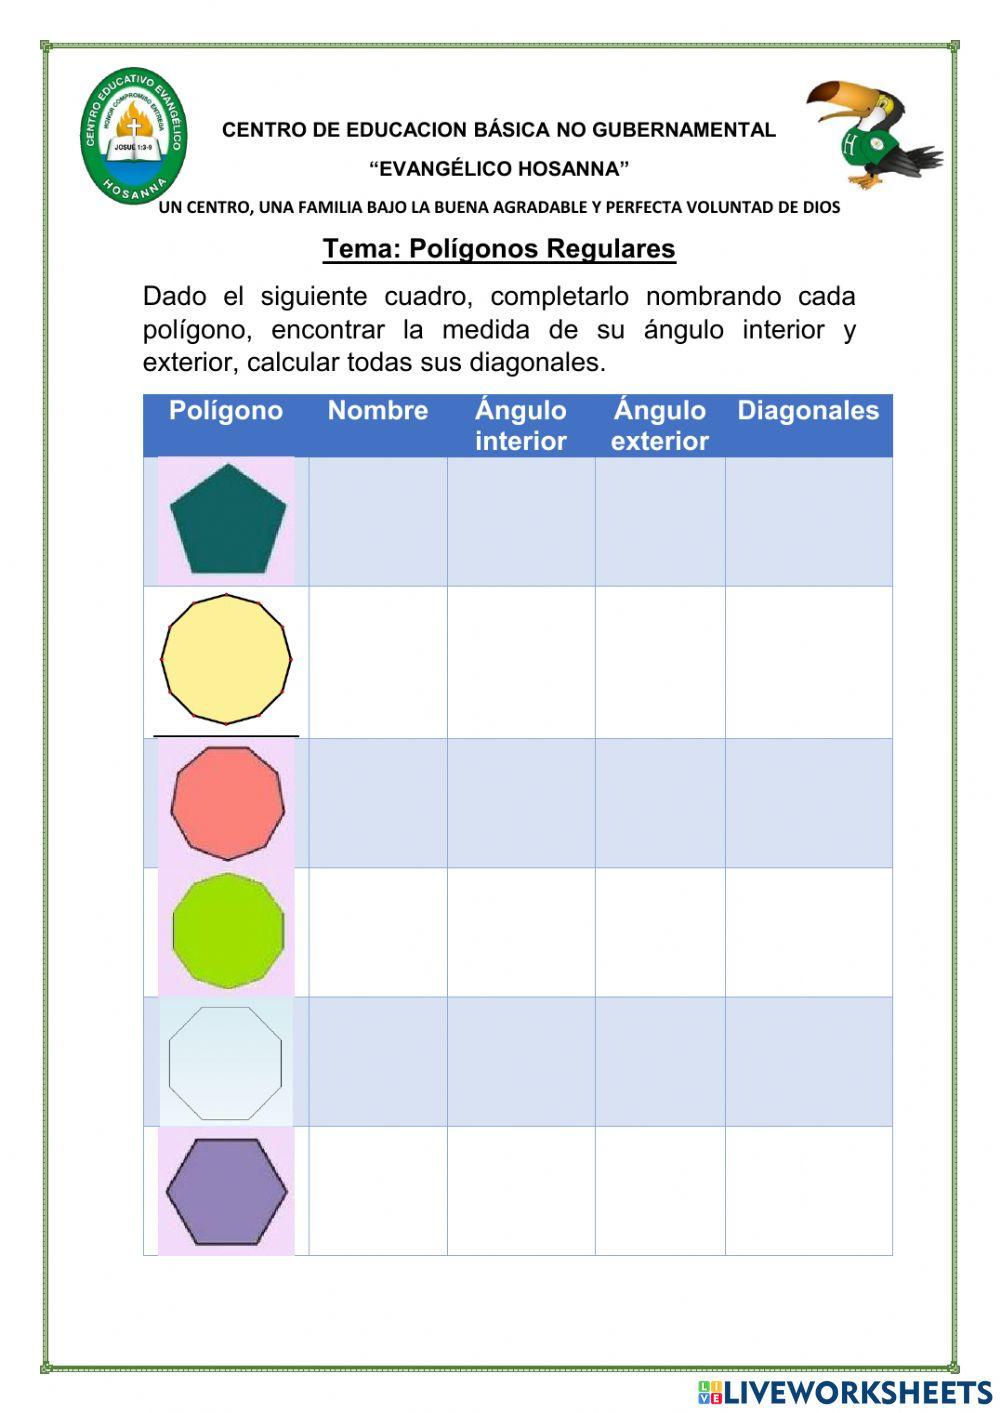 Polígonos regulares y sus elementos